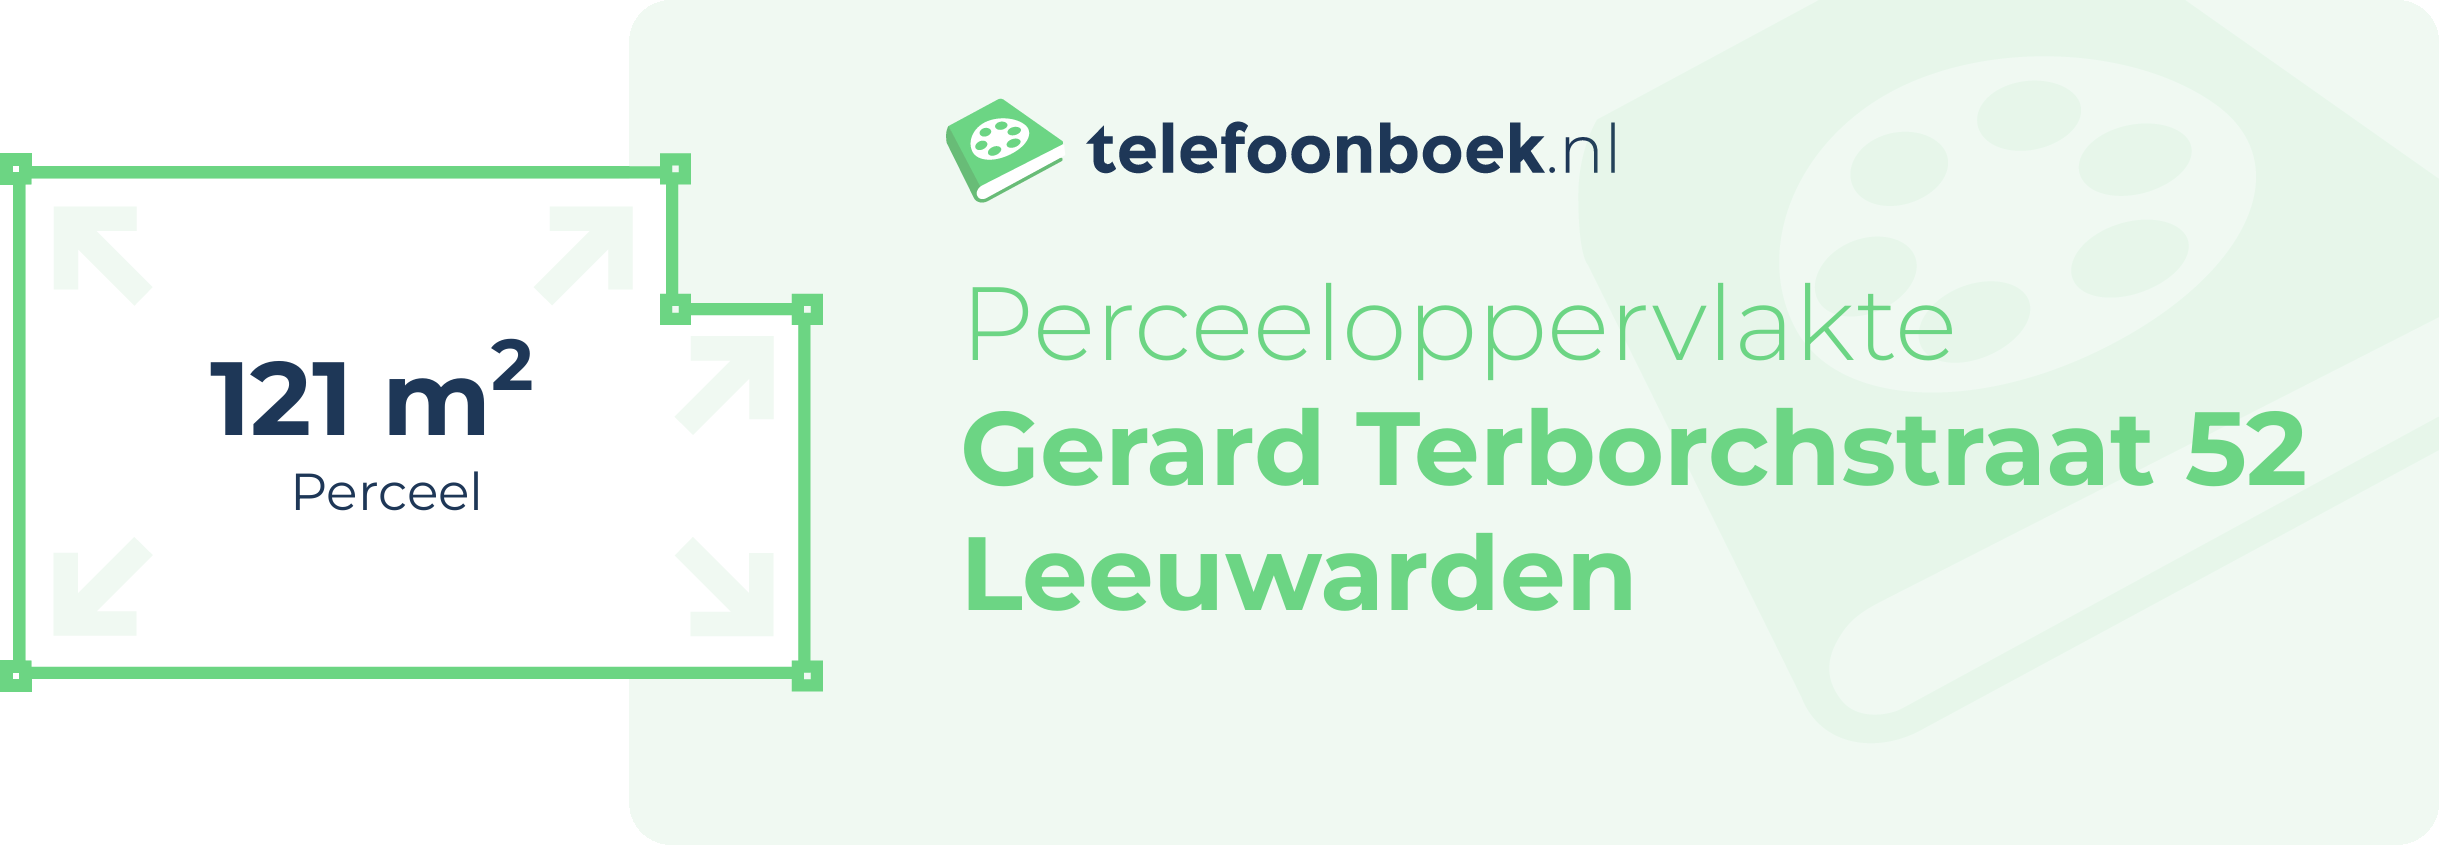 Perceeloppervlakte Gerard Terborchstraat 52 Leeuwarden